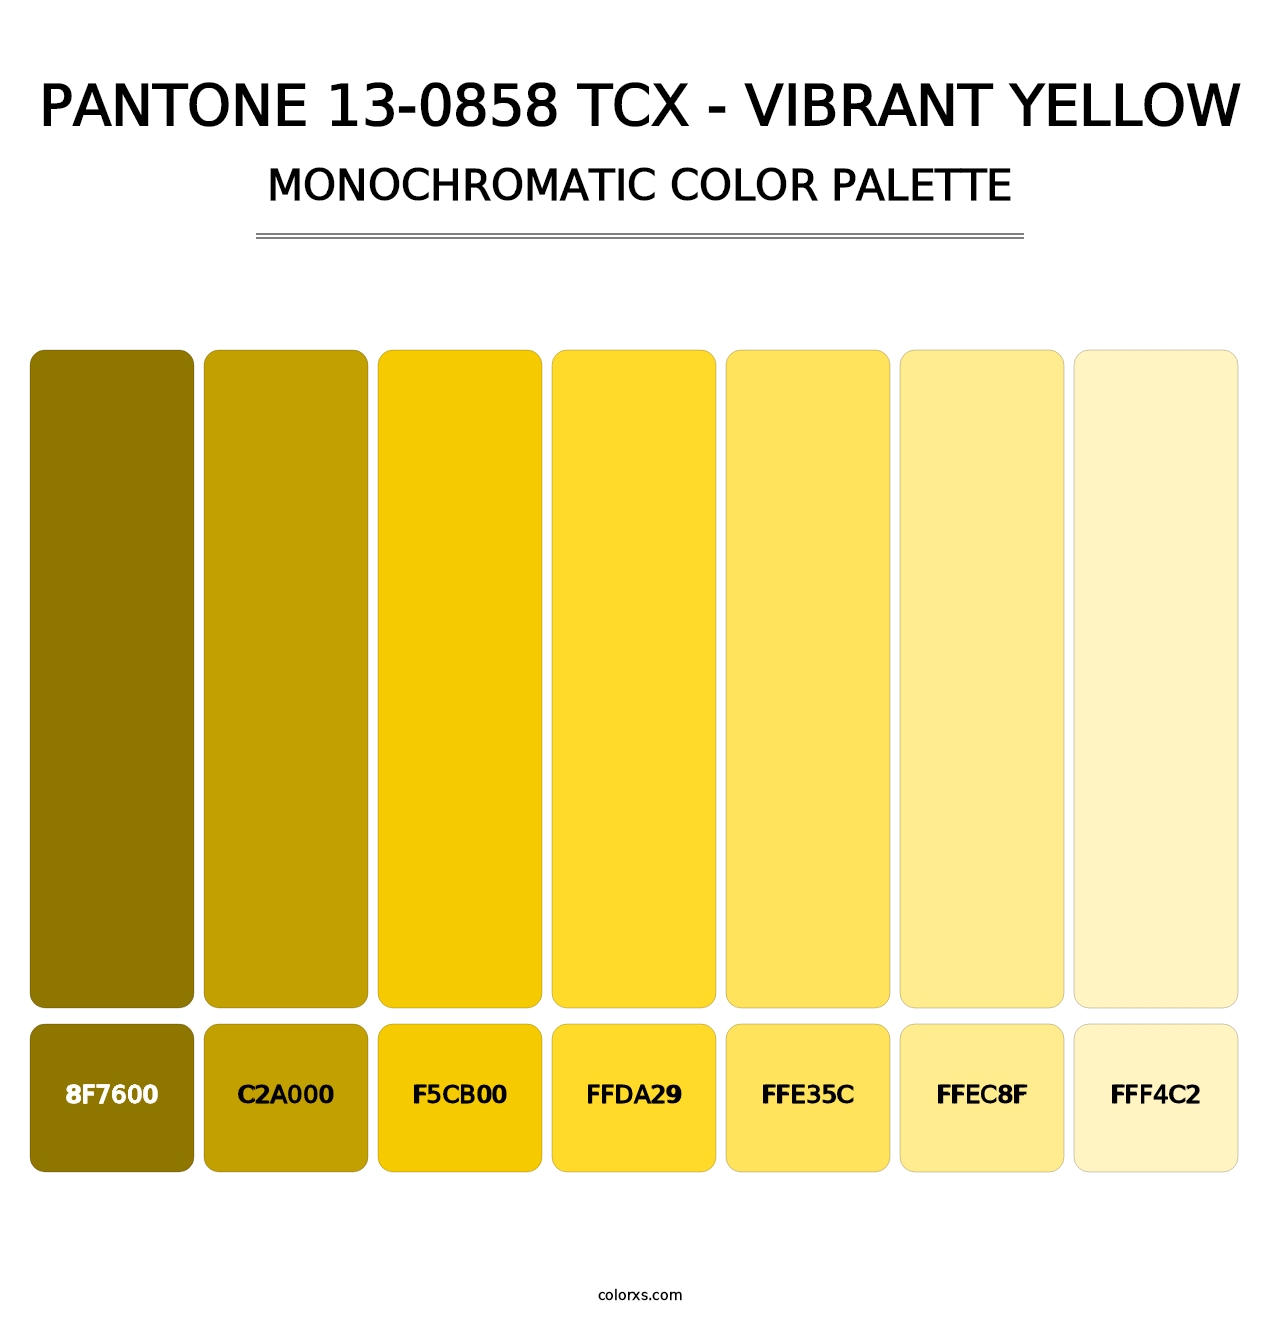 PANTONE 13-0858 TCX - Vibrant Yellow - Monochromatic Color Palette